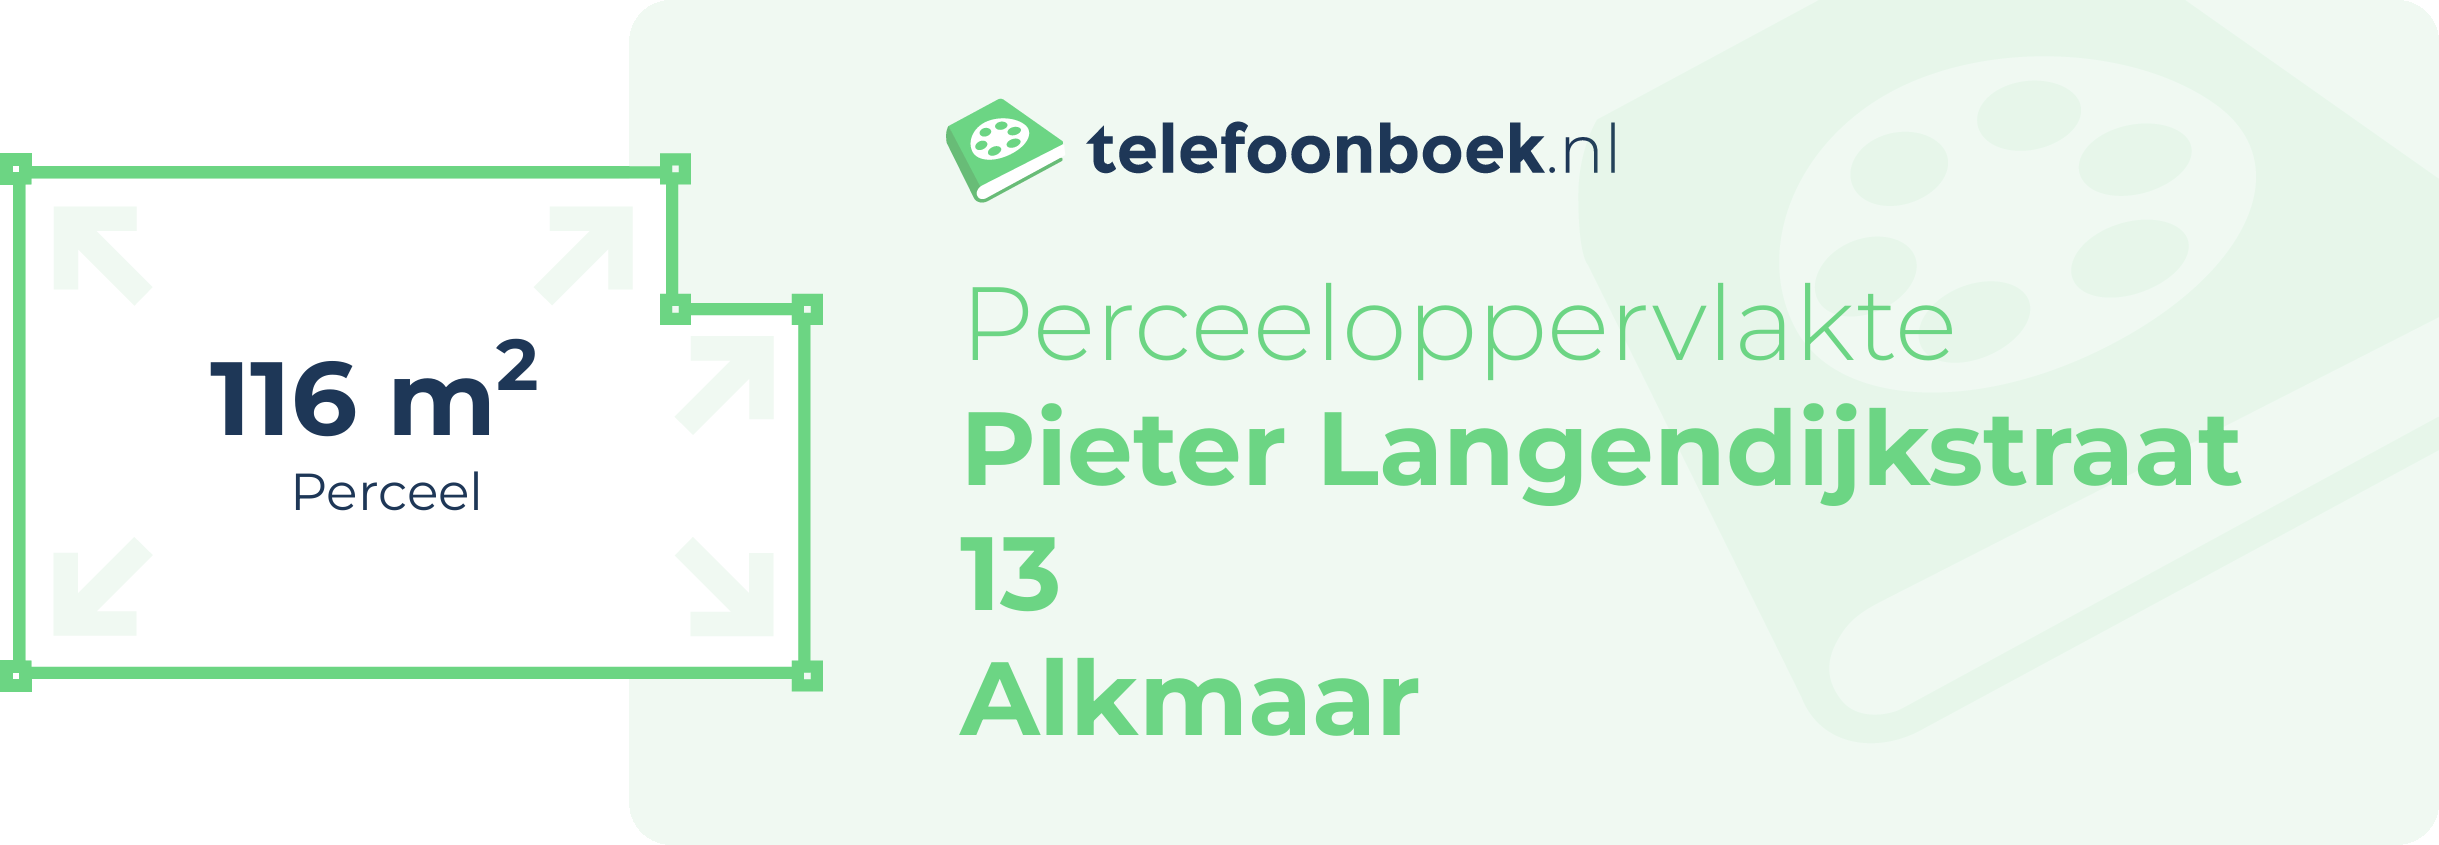 Perceeloppervlakte Pieter Langendijkstraat 13 Alkmaar